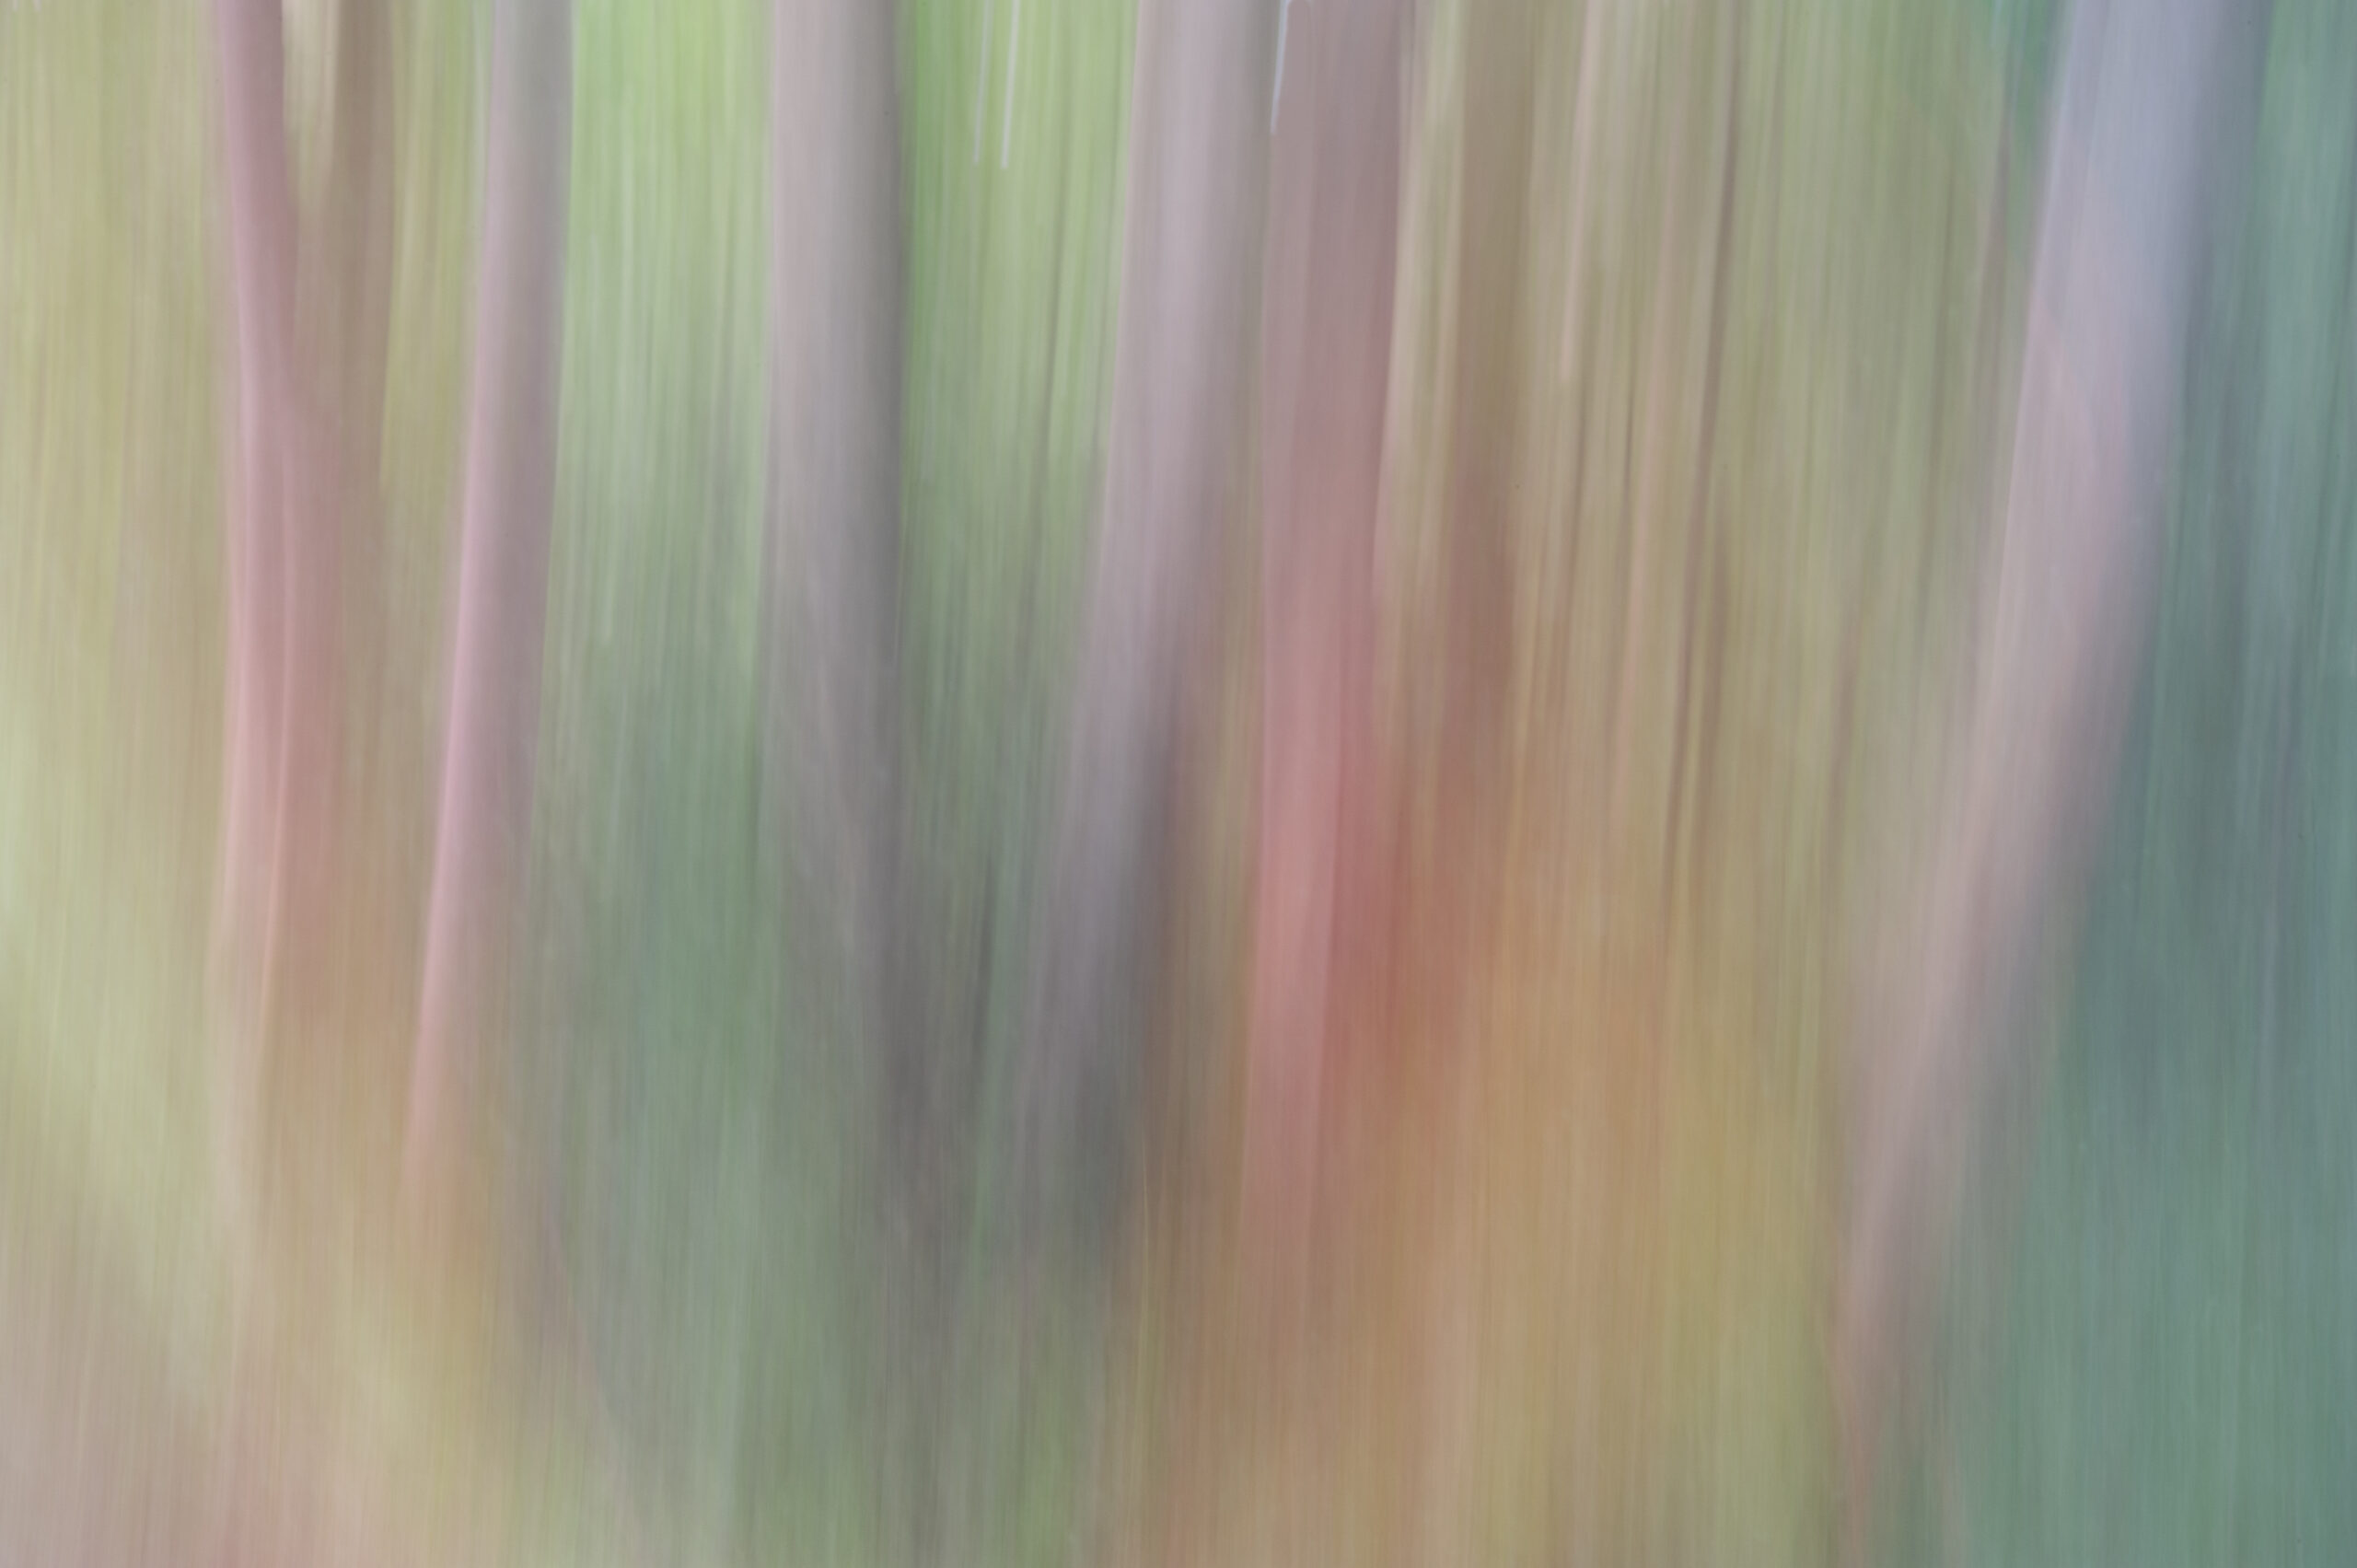 Pastelachtige boomstammen, bewegend beeld